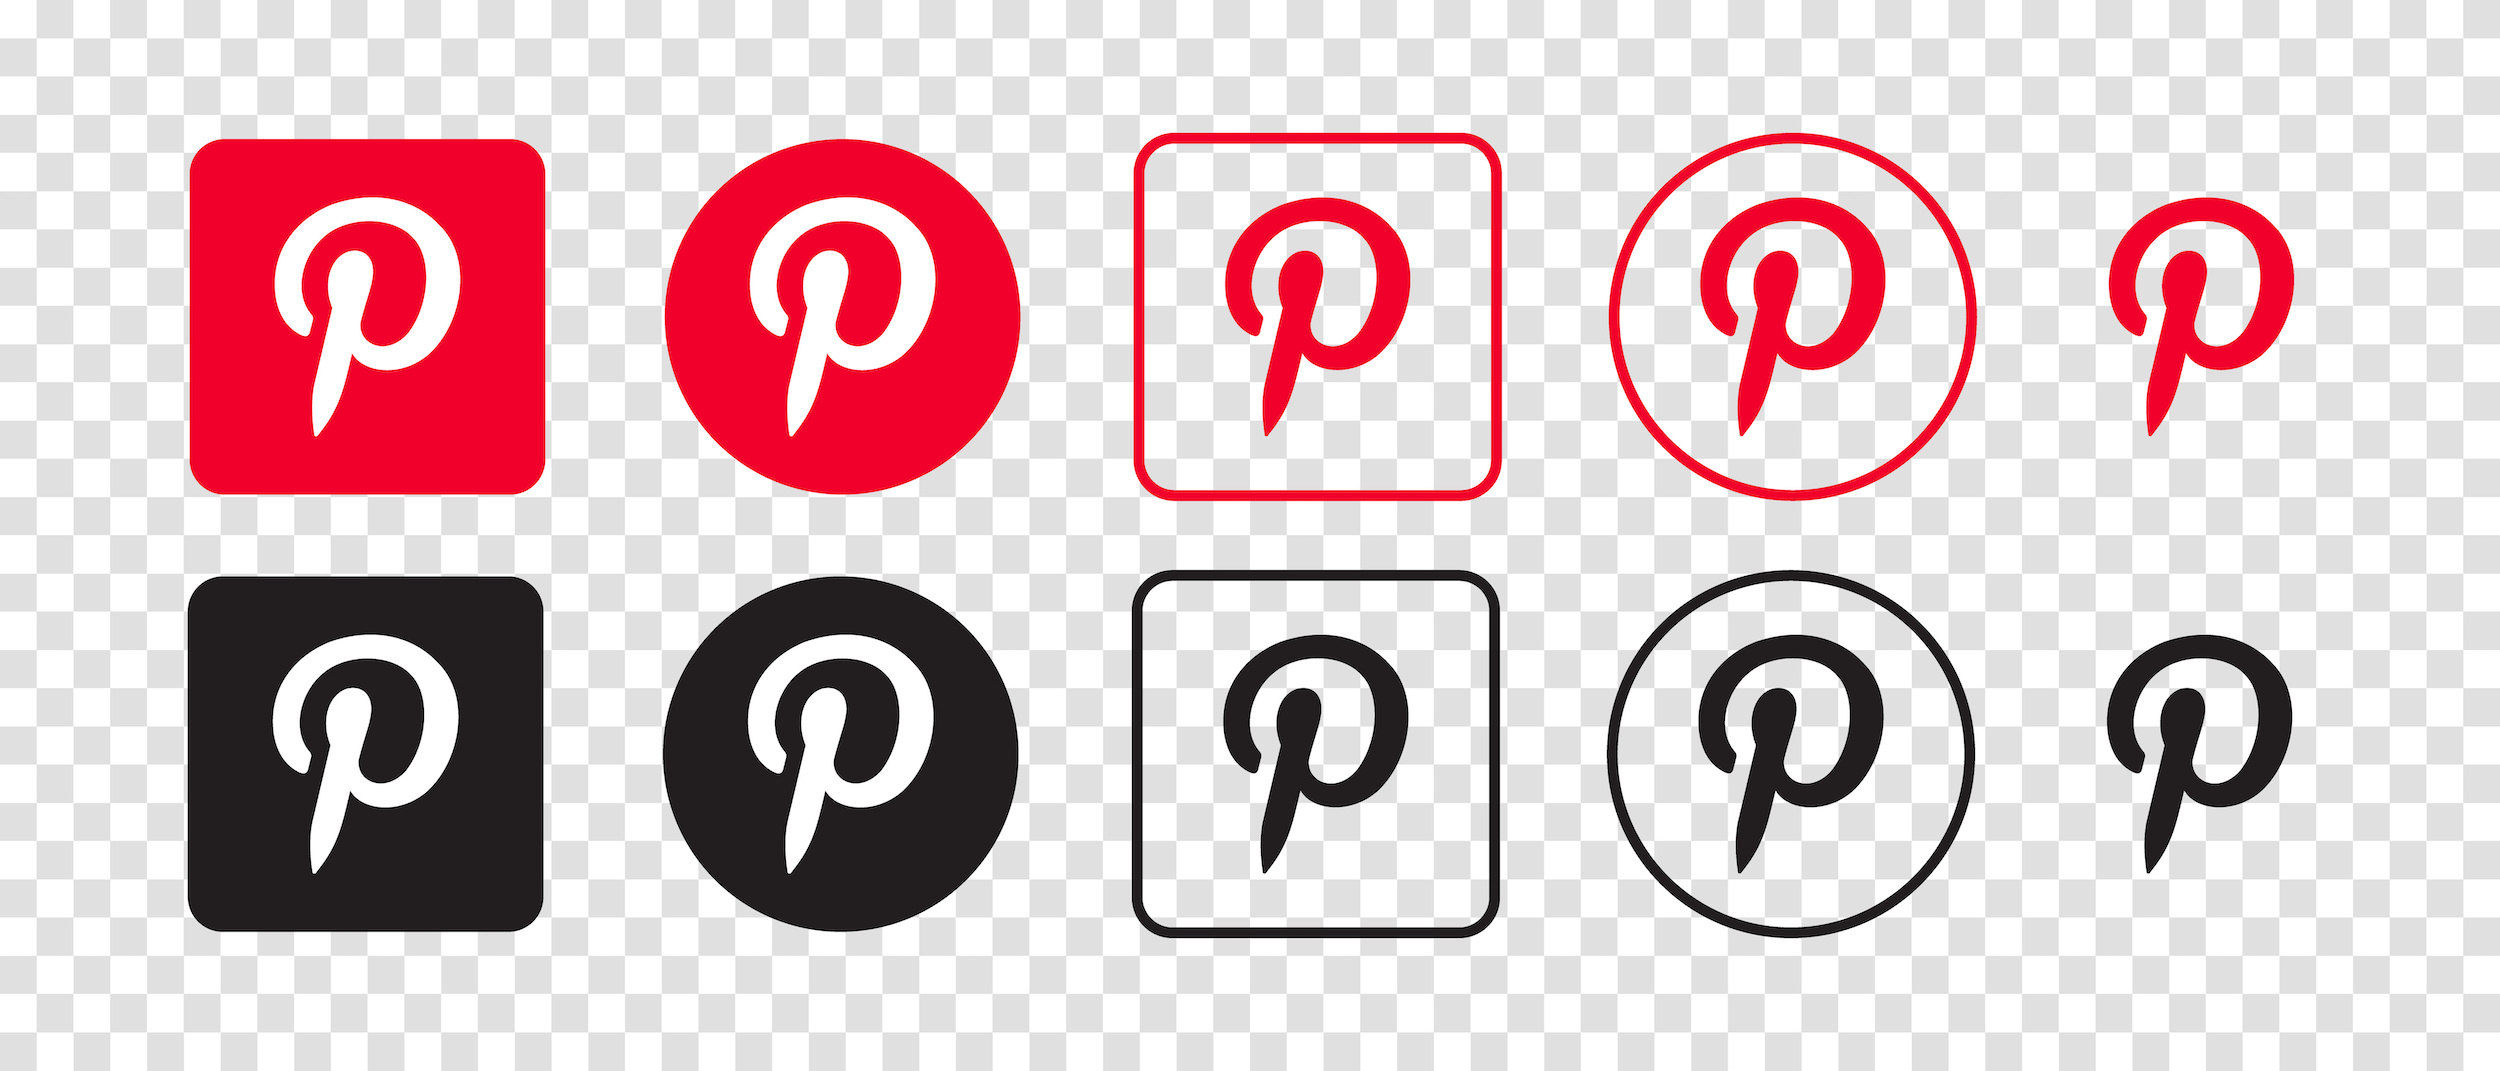 Pinterest logos